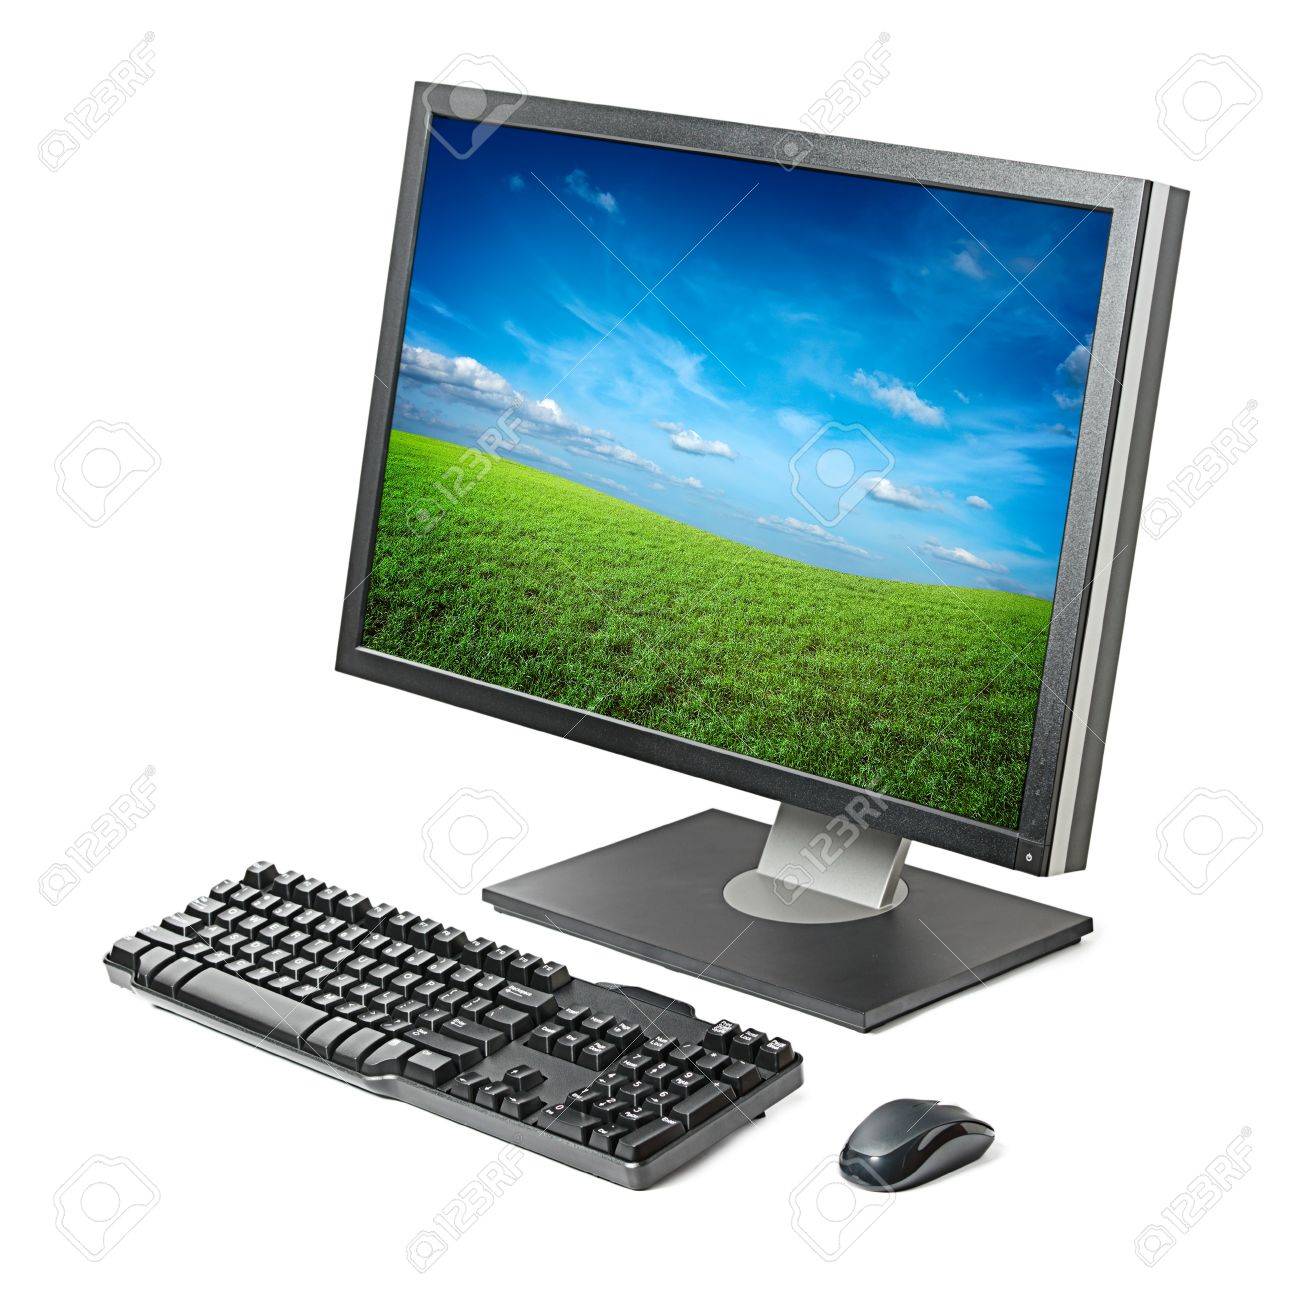 Point d acc s et portail captif sur une Raspberry Pi- Transmission d informations dans un r seau ferm 7938242-poste-de-travail-informatique-moniteur-clavier-souris-isole -sur-fond-blanc.jpg